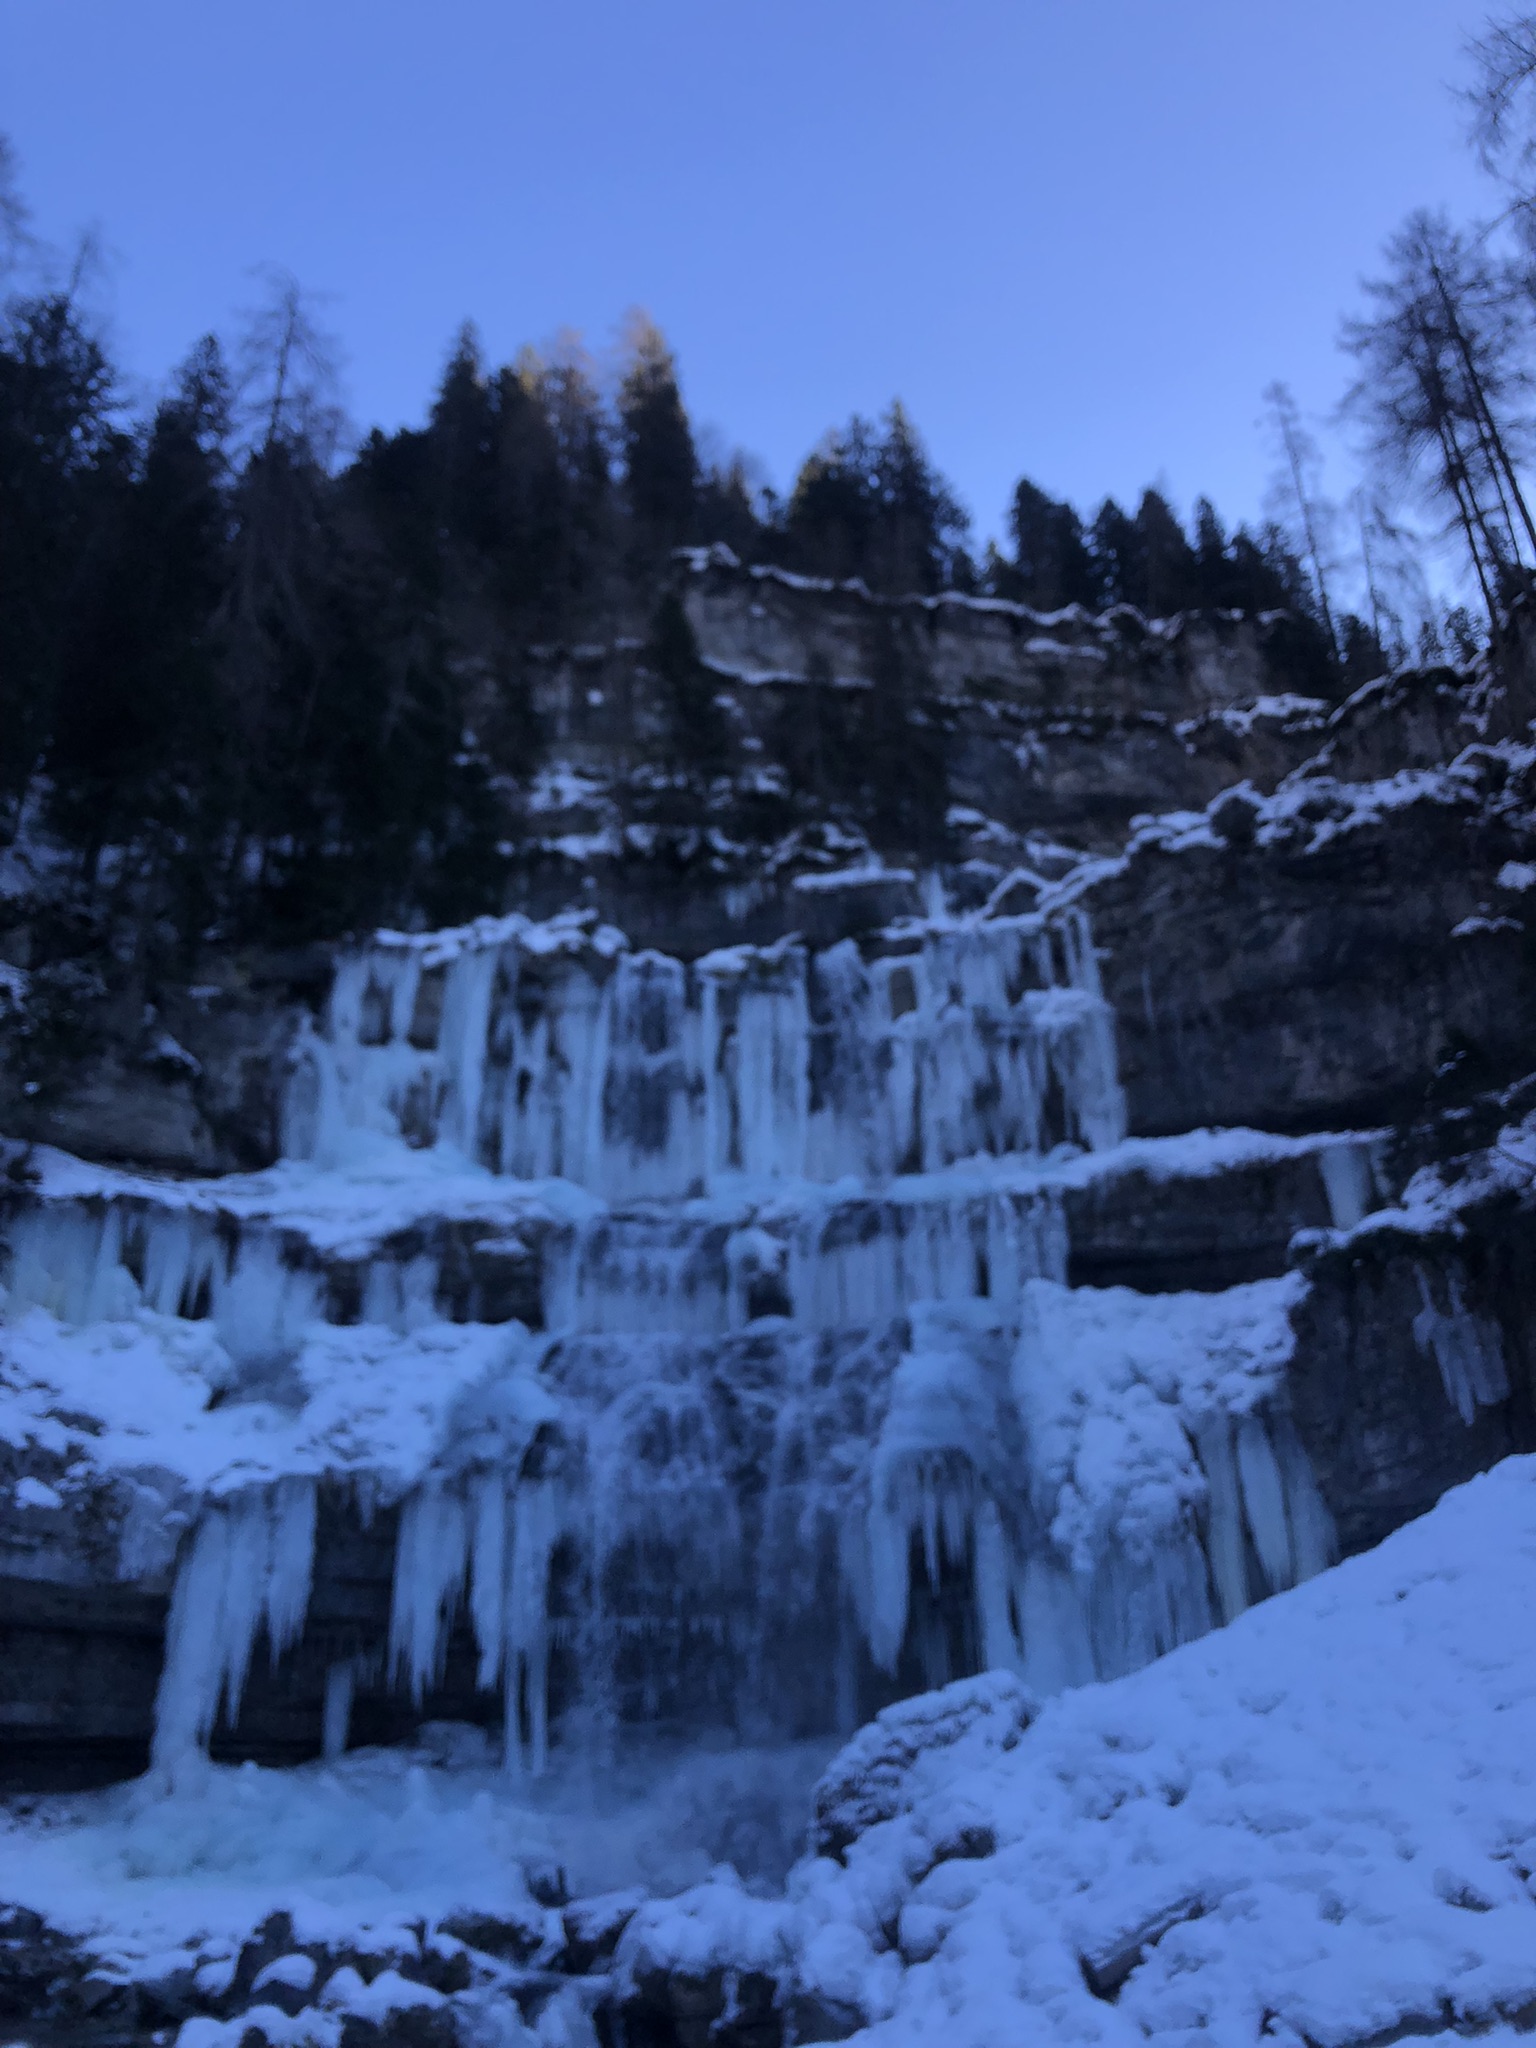 Cascate di Vallesinella in inverno dalla Val Brenta